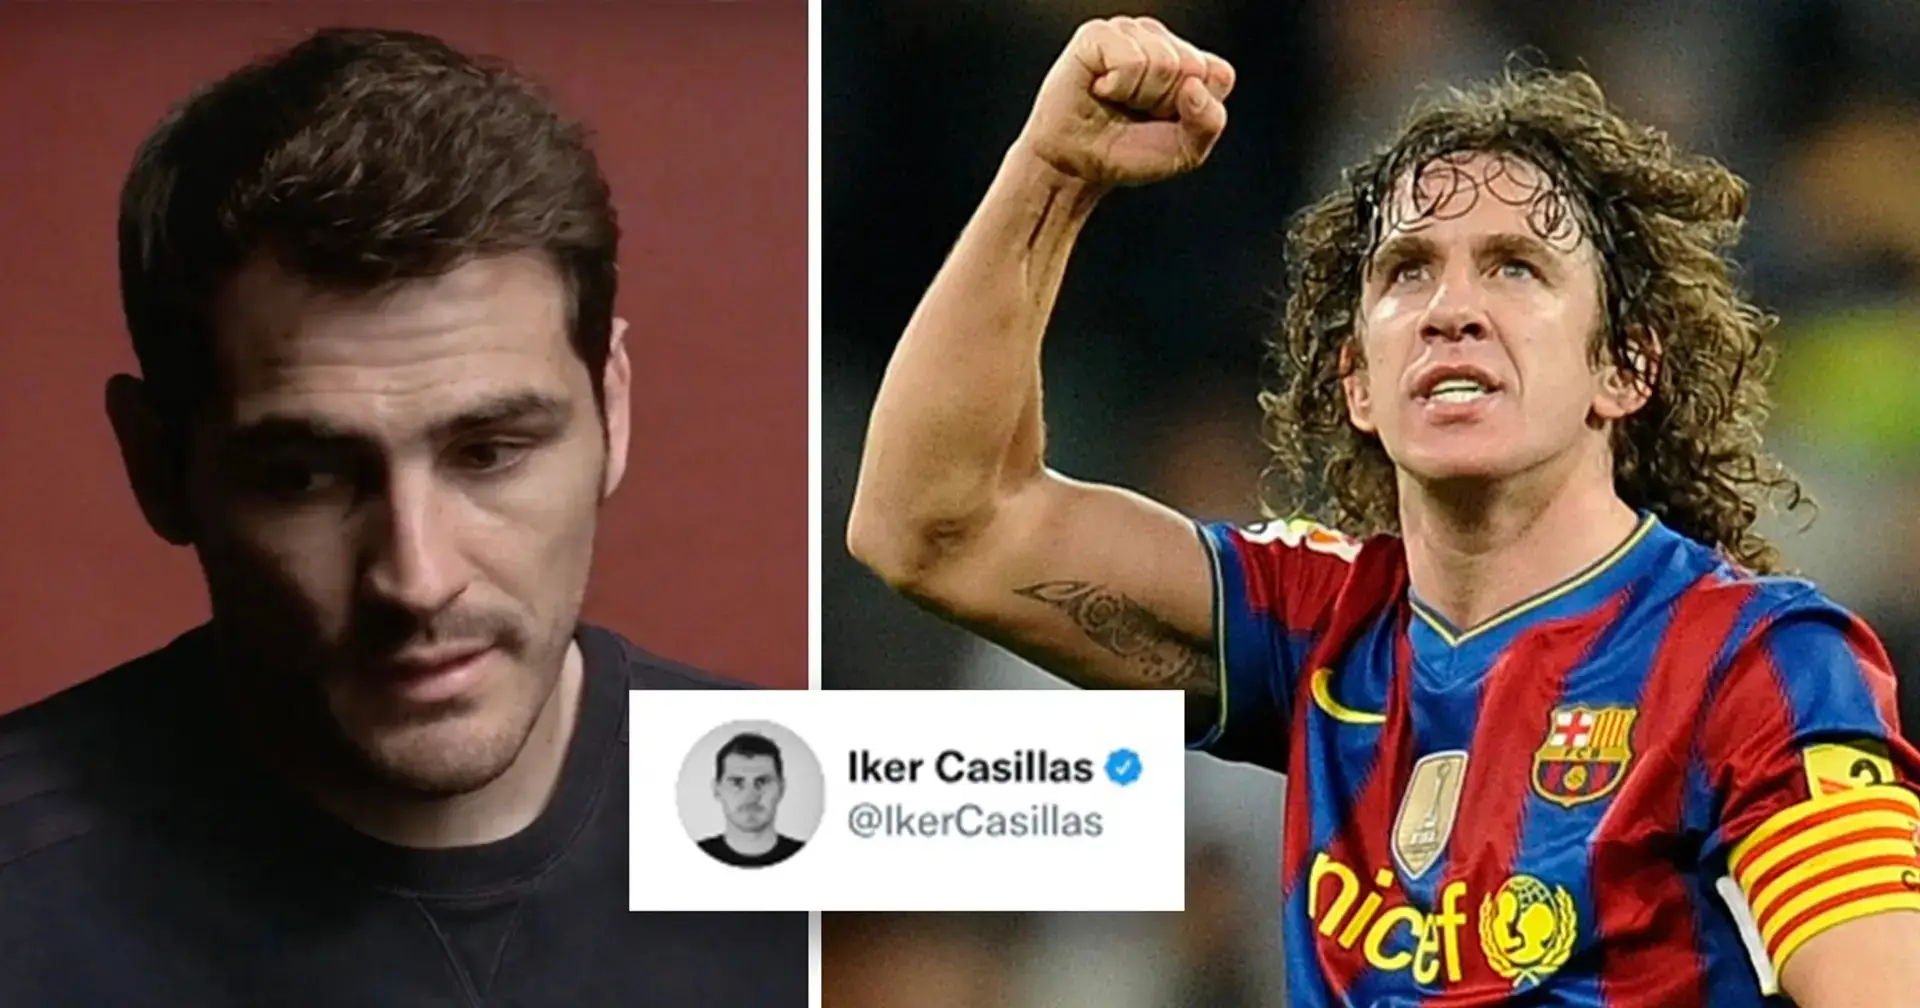 'Es hora de contar nuestra historia, Iker': Iker Casillas se declara gay, Carles Puyol reacciona inmediatamente 